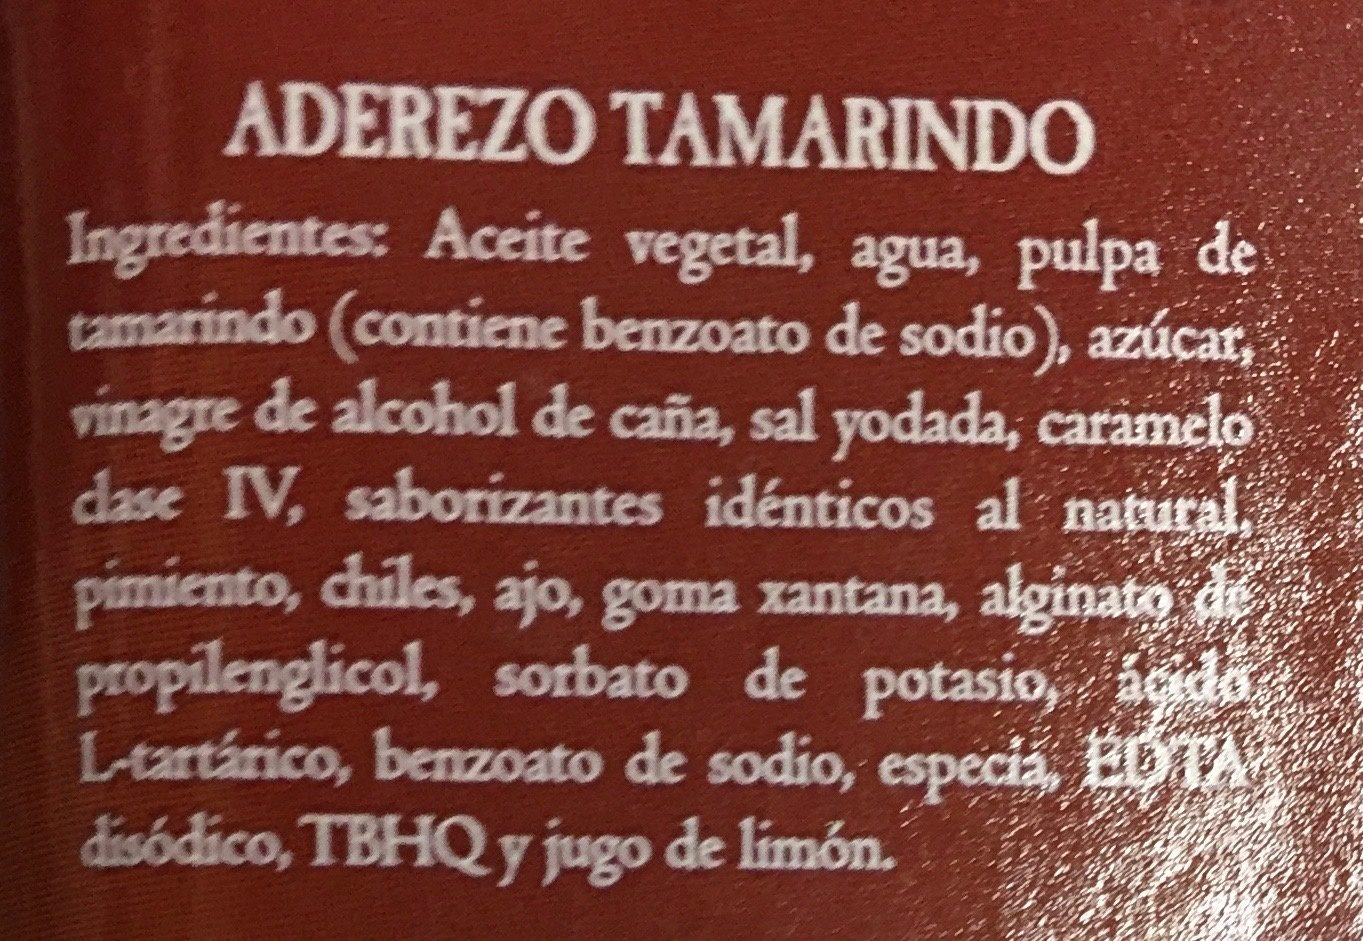 ADEREZO DE TAMARINDO - Ingredients - es